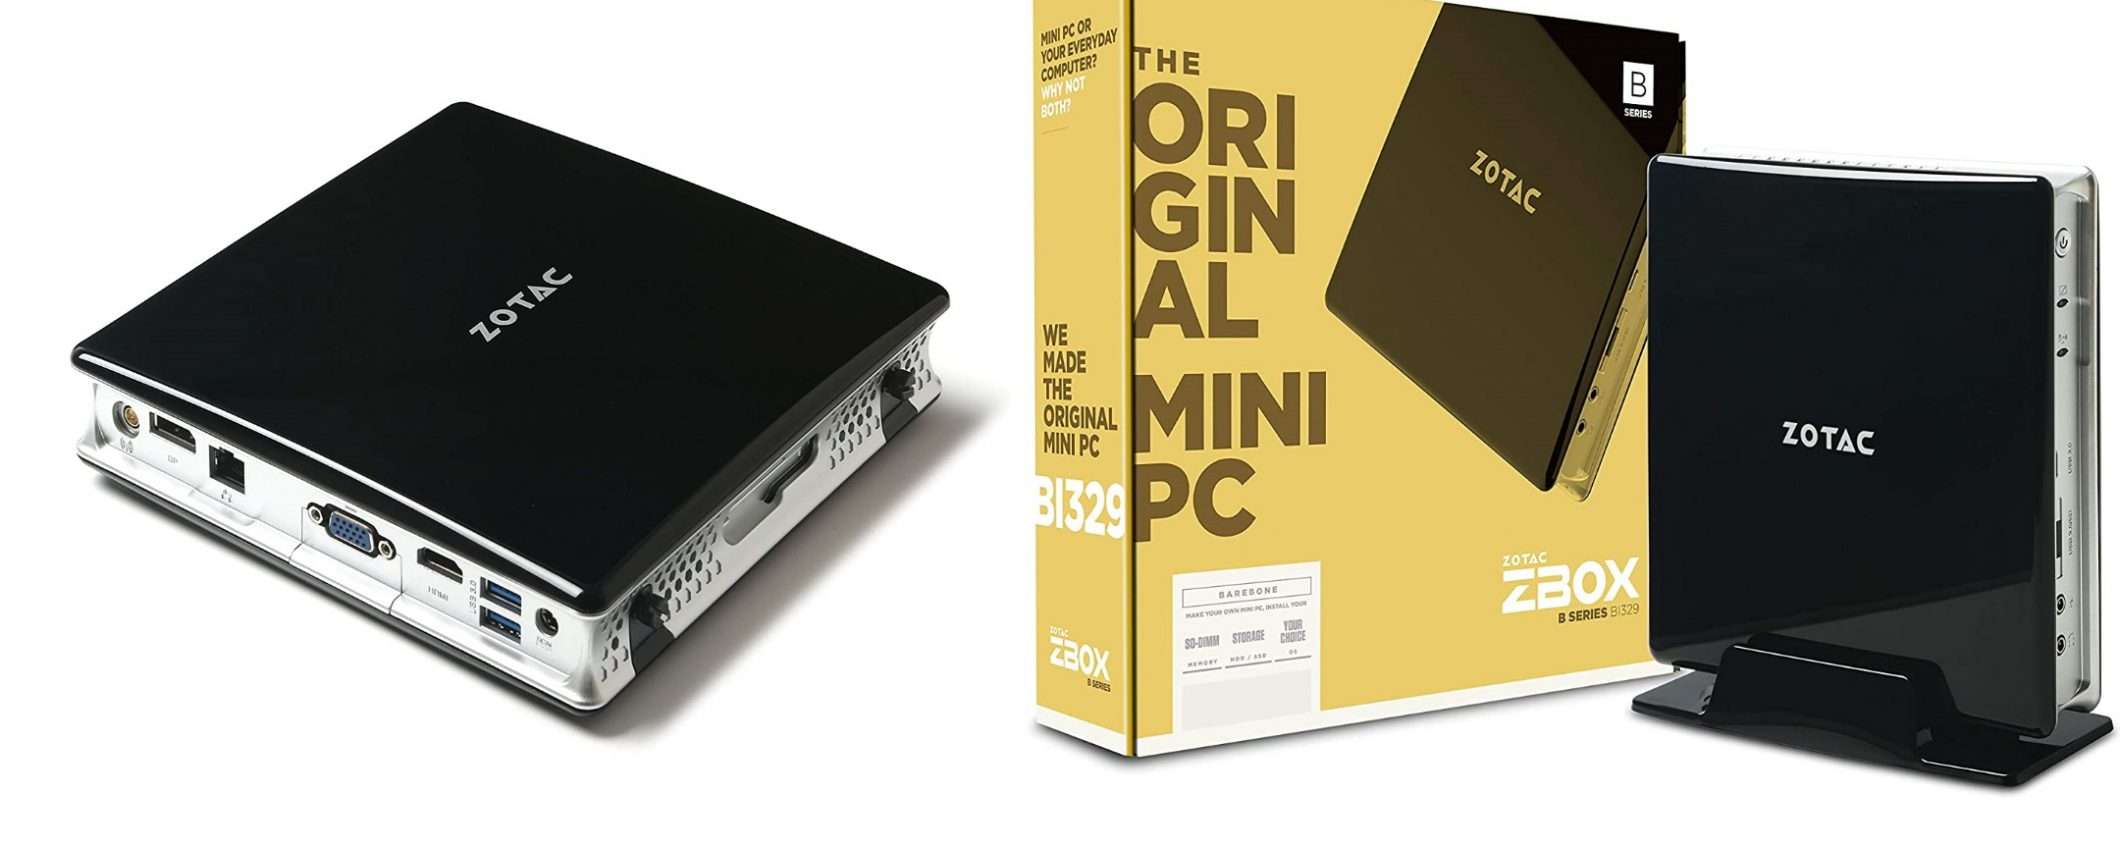 Mini PC Zotac: alta qualità, prezzo low cost su Amazon